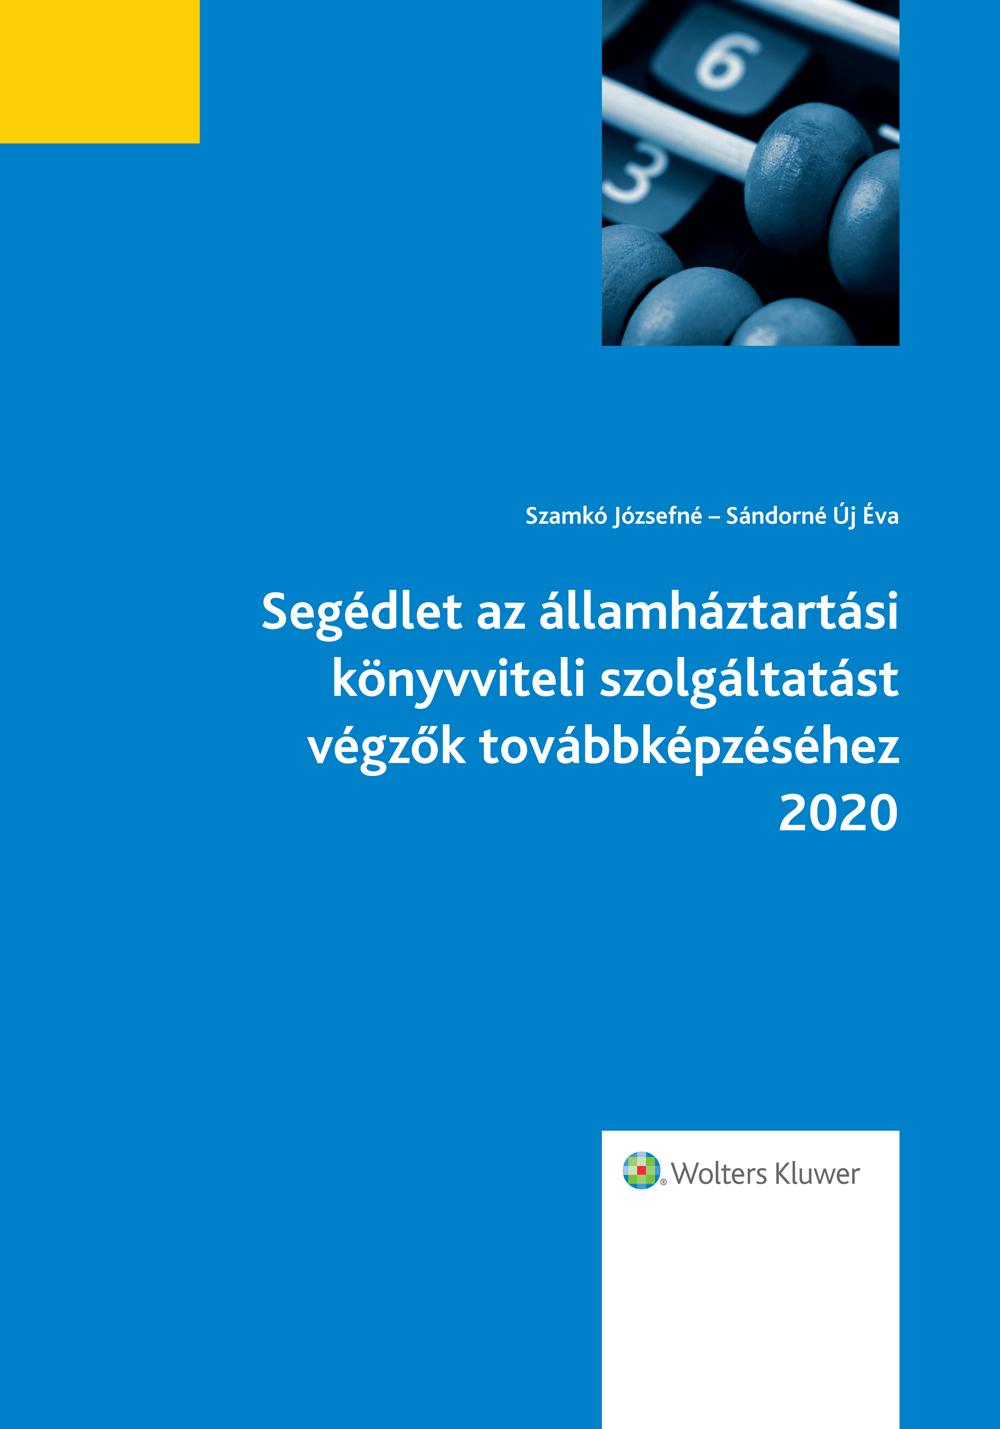 Segédlet az ÁHT könyvviteli szolgáltatást végzők továbbképzéséhez 2020